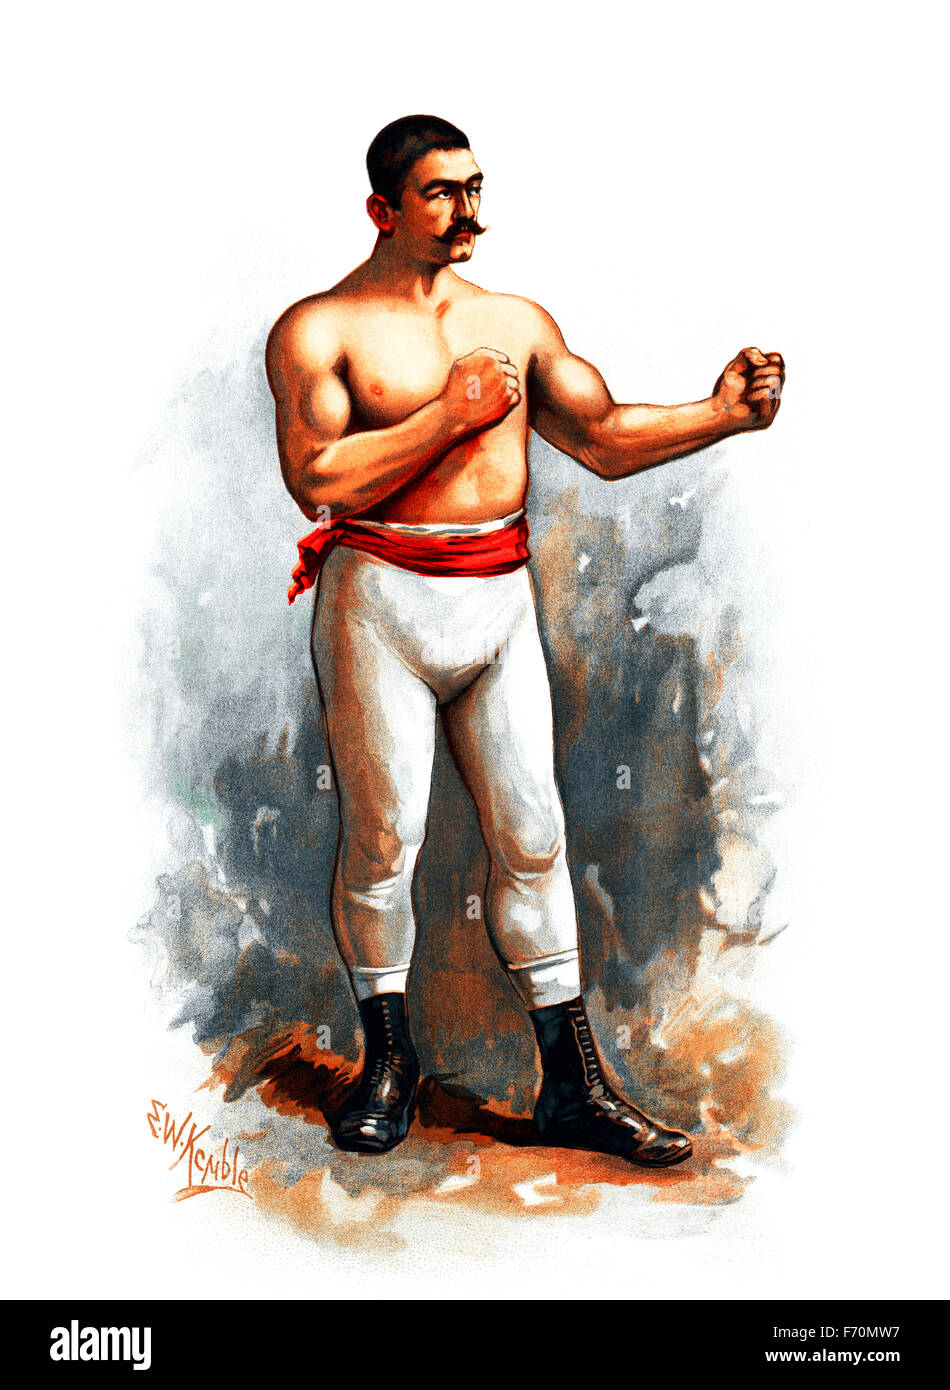 Vintage Porträt Drucken des legendären amerikanischen bloßen Fäusten und behandschuhten Boxer John L Sullivan (1858-1918). Sullivan, den Spitznamen "The Boston Strong Boy", gilt als der letzte bloßen Fäusten Weltmeister im Schwergewicht nach London Prize Ring Regeln und der erste behandschuhte Schwergewichts-Weltmeister unter Marquess of Queensberry Rules. Er beherrscht die Box-Szene in den 1880er Jahren und war Amerikas erste sportliche Superstar. Seine Herrschaft als König der Schwergewichte kam zu einem Ende, als er zu James J Corbett im Jahr 1892 in einem behandschuhten Kampf unter Queensberry-Regeln gekämpft verlor. Stockfoto